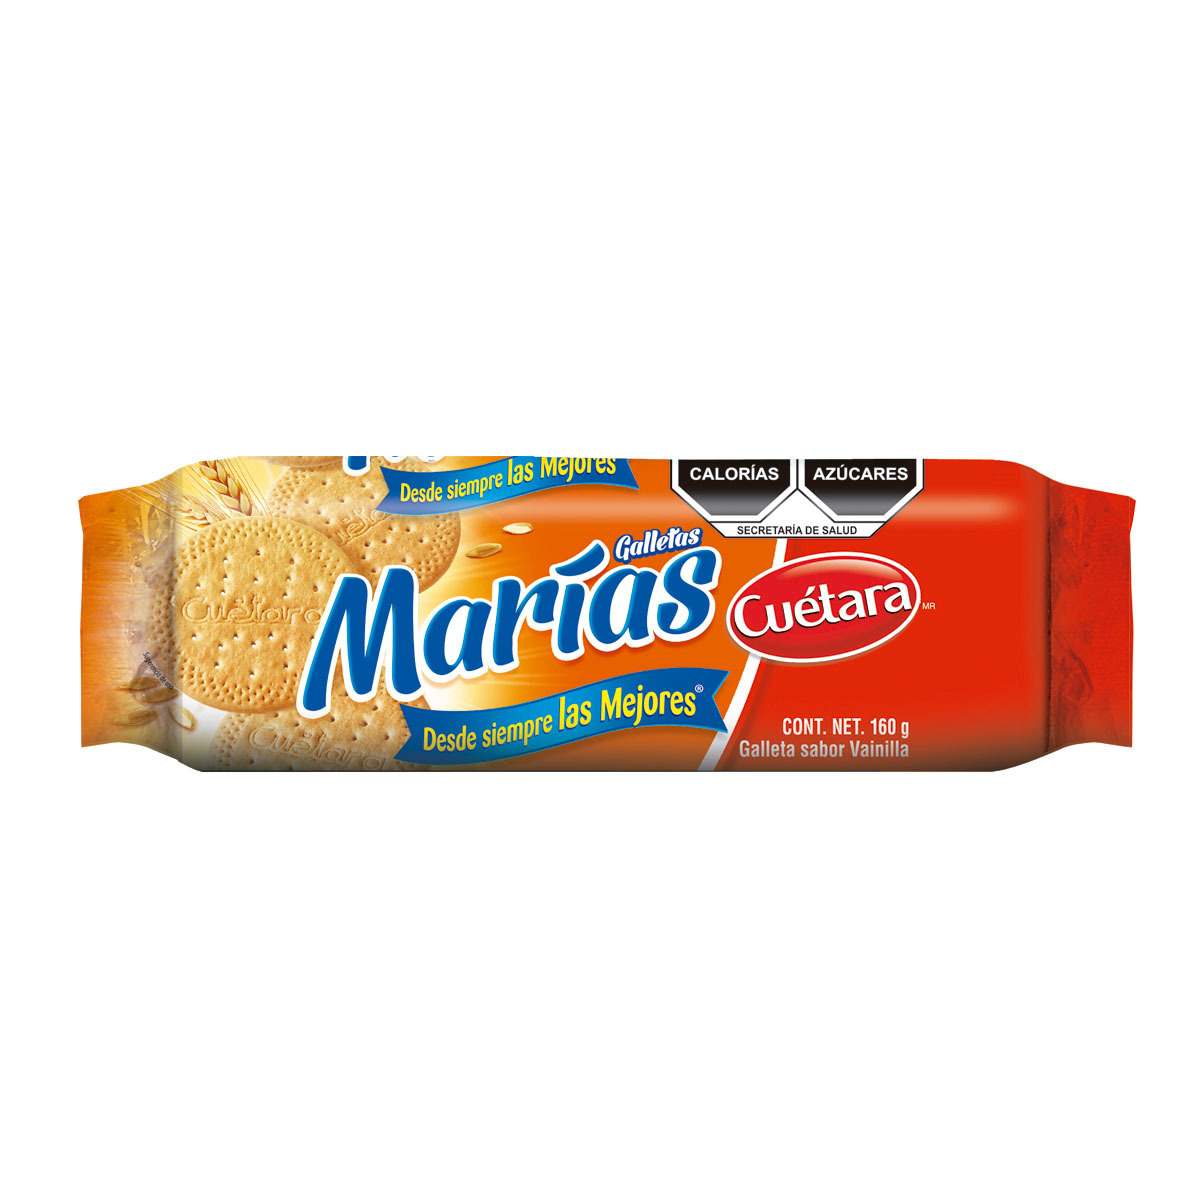 CUETARA MARIAS 20 160 GR